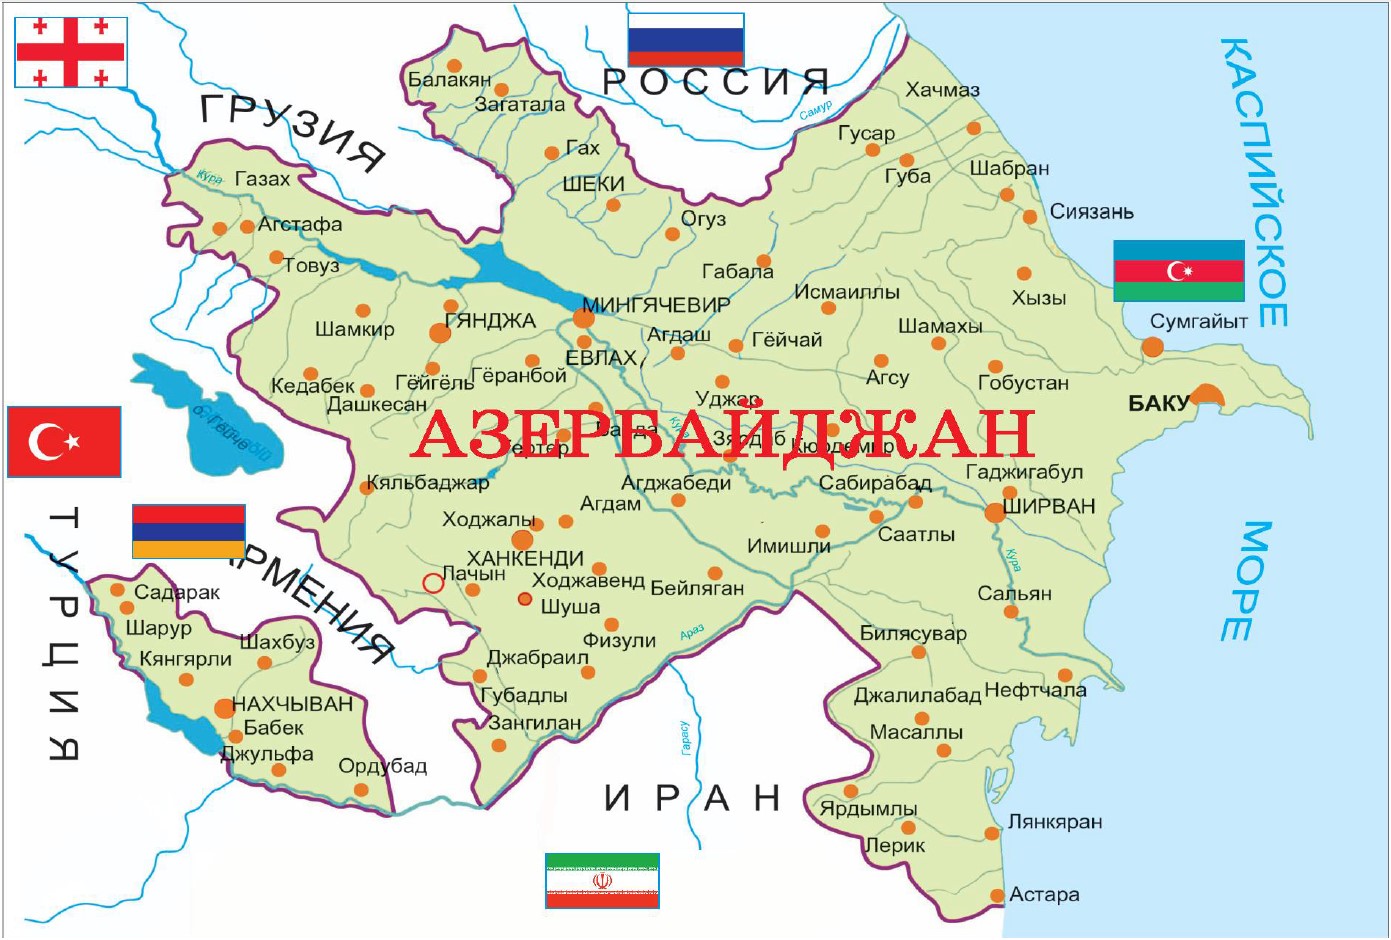 Узнай азербайджан